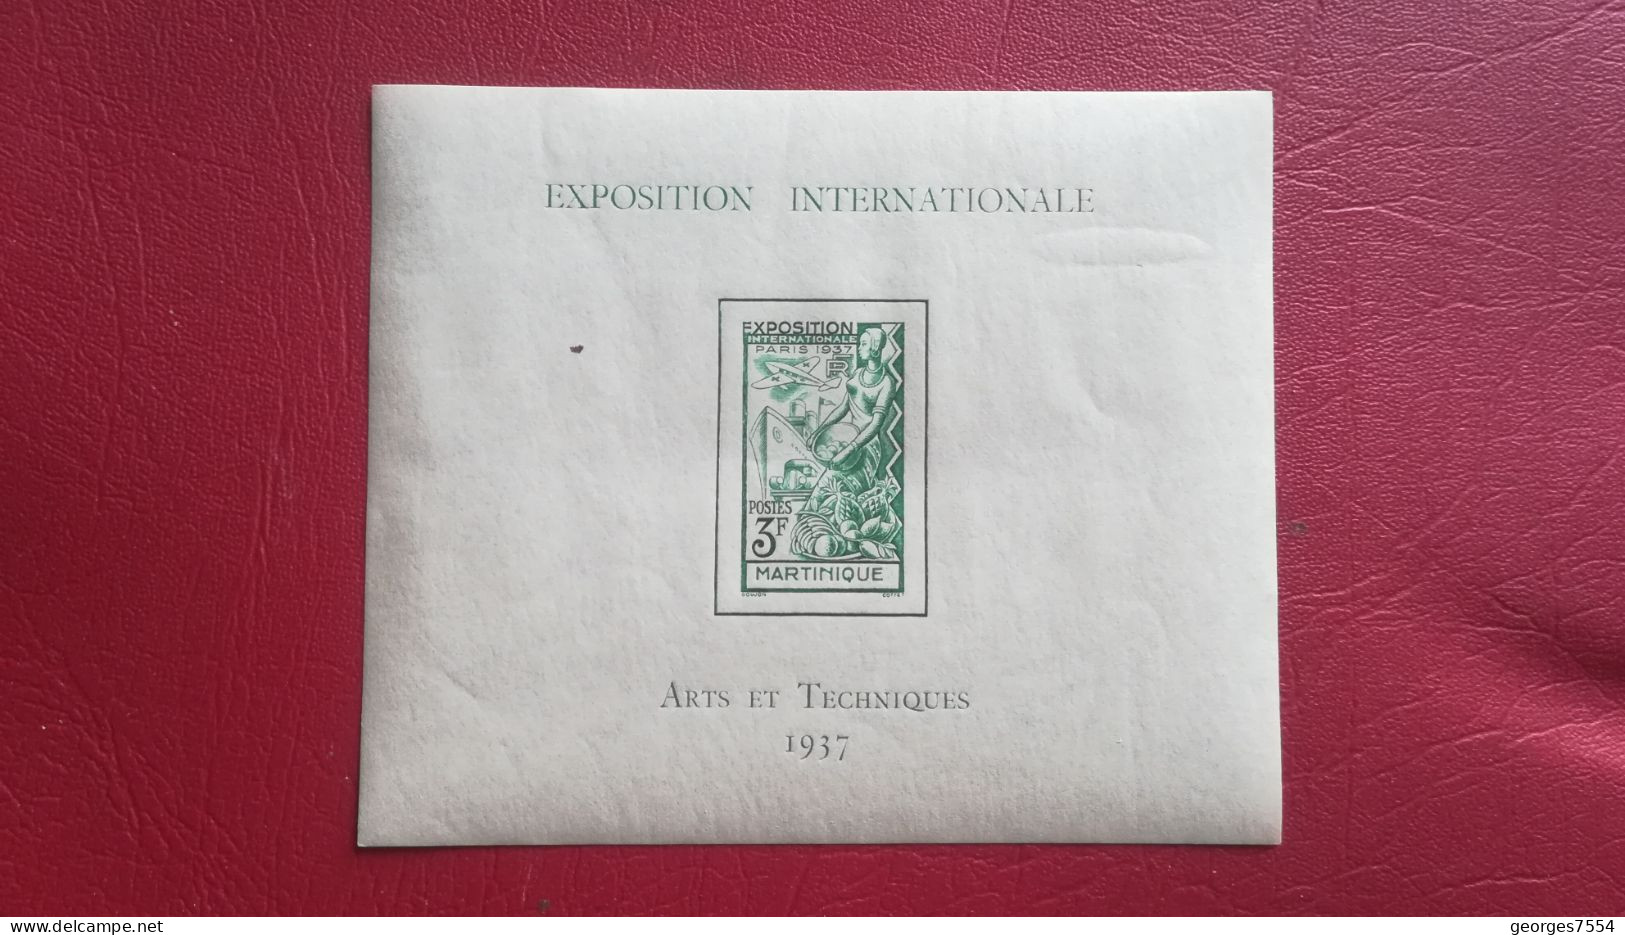 BLOC EXPOSITION INTERNATIONALE - MARTINIQUE 1937 - ARTS ET TECHNIQUES NEUF** Sans Trace De Charniere - 1937 Exposition Internationale De Paris